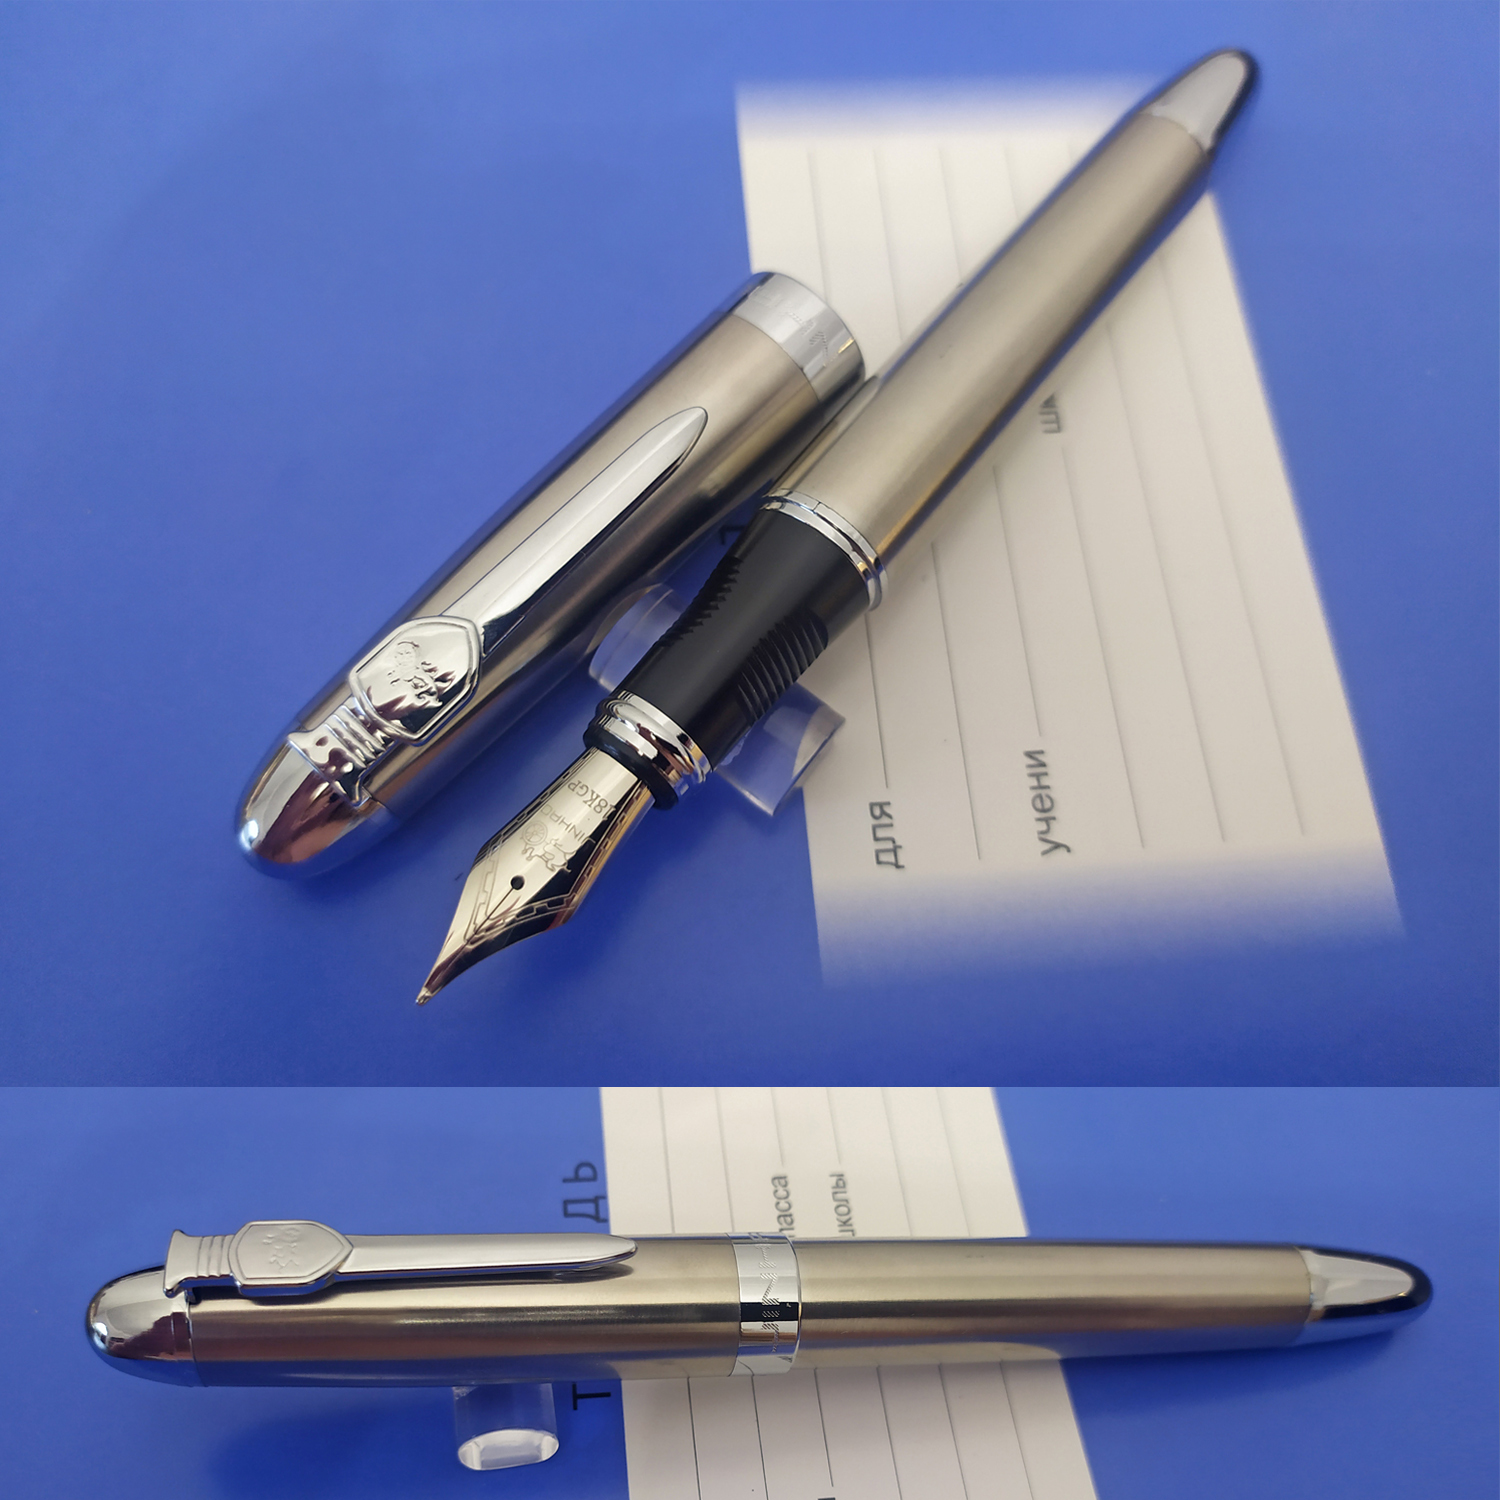 Перьевая ручка Jinhao 450А, Китай. Перо М (0.75 мм), корпус металл. Цвет серебристо-бронзовый.  SALE 1500!